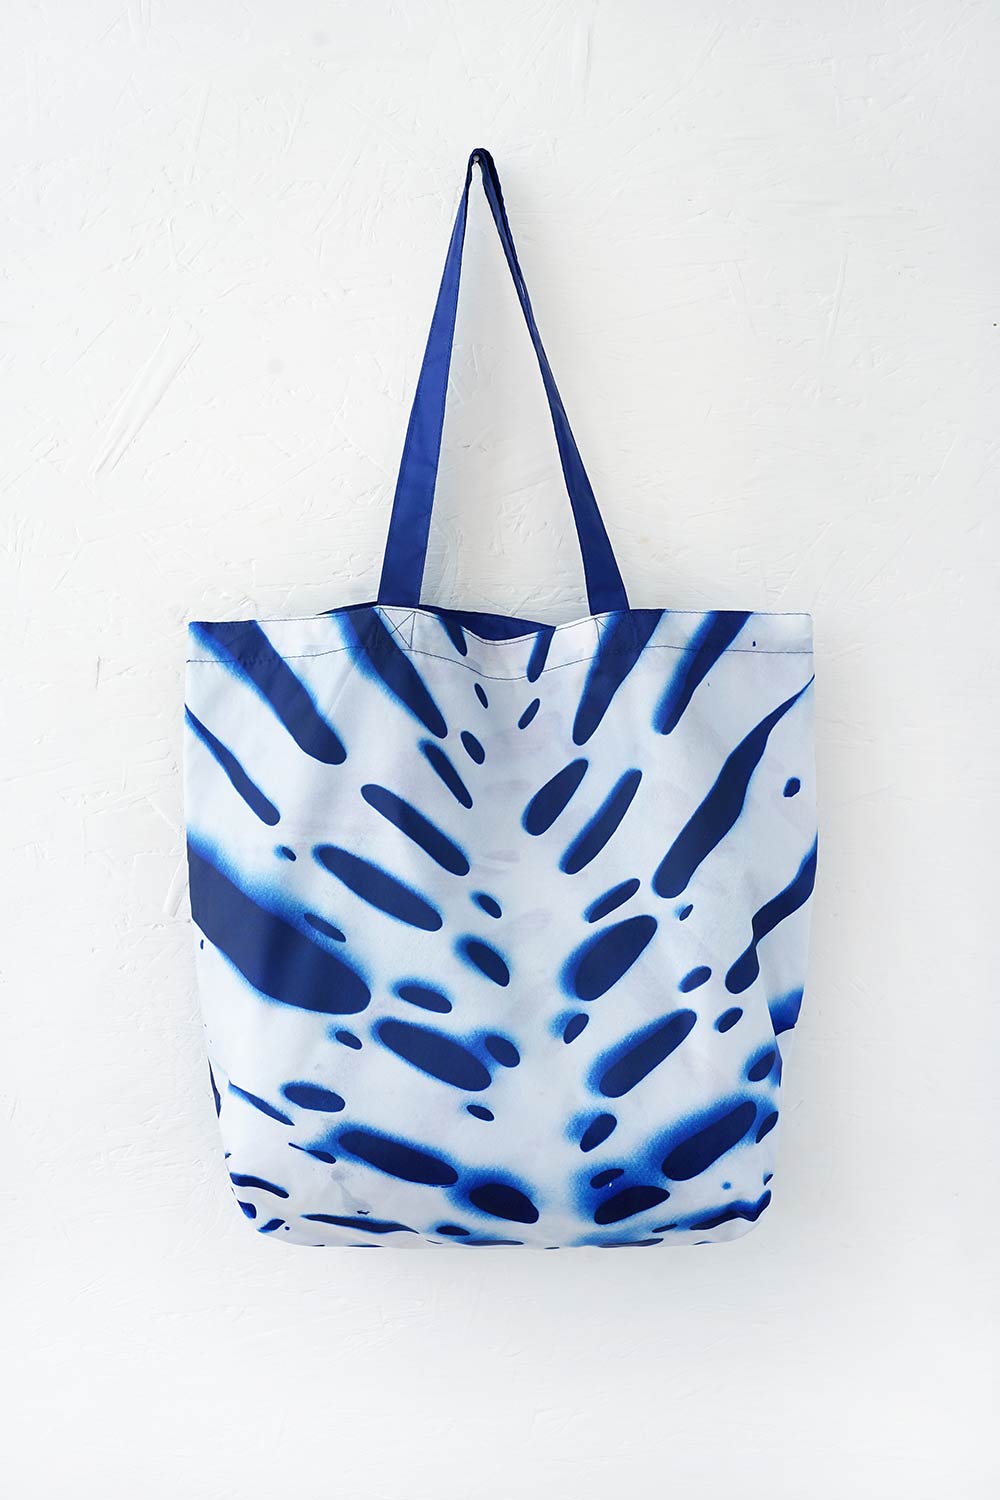 Cyanotype Print Tote Bag 1 - Masha Lamzina